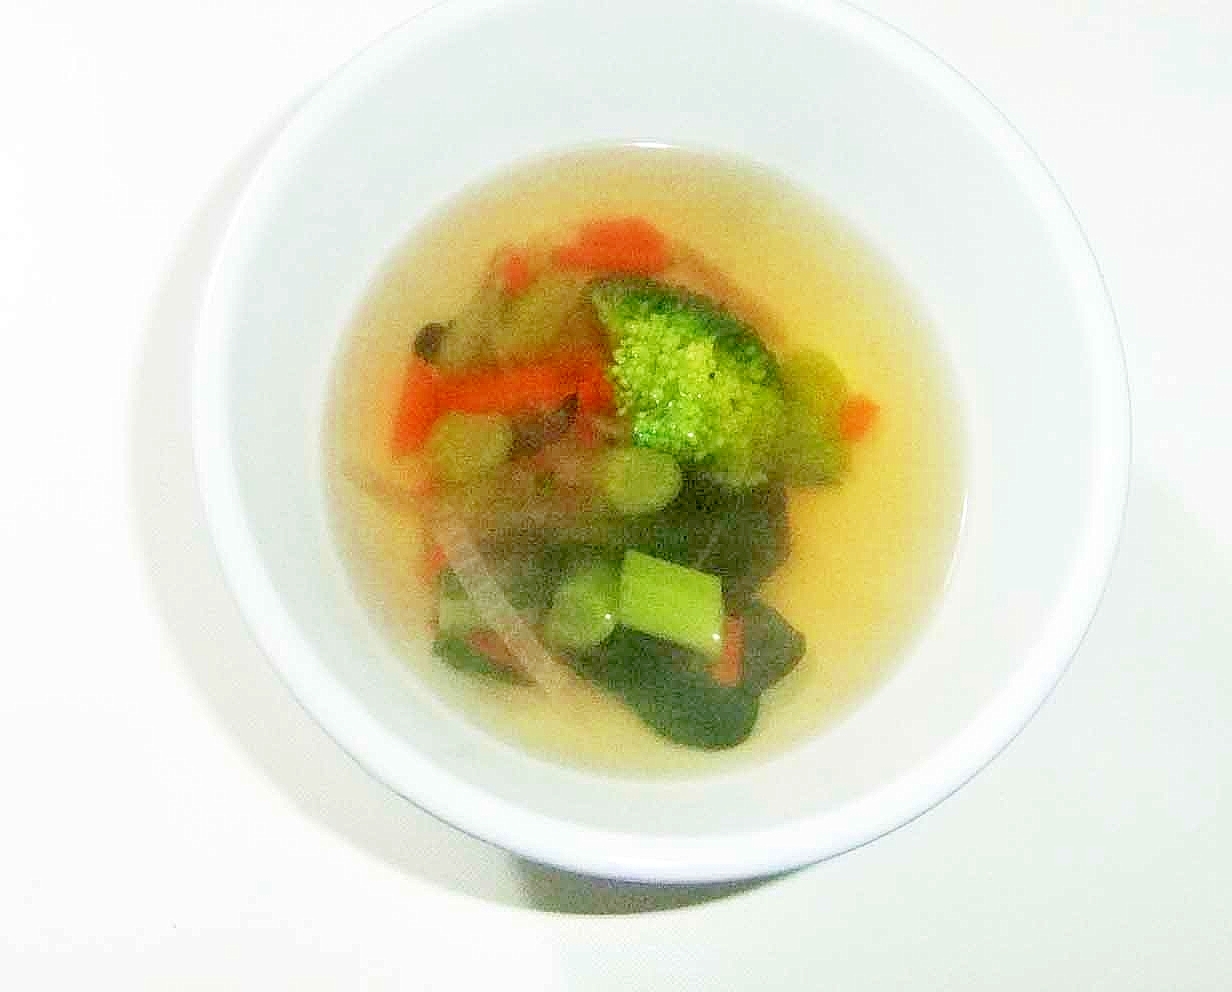 温まる野菜スープ